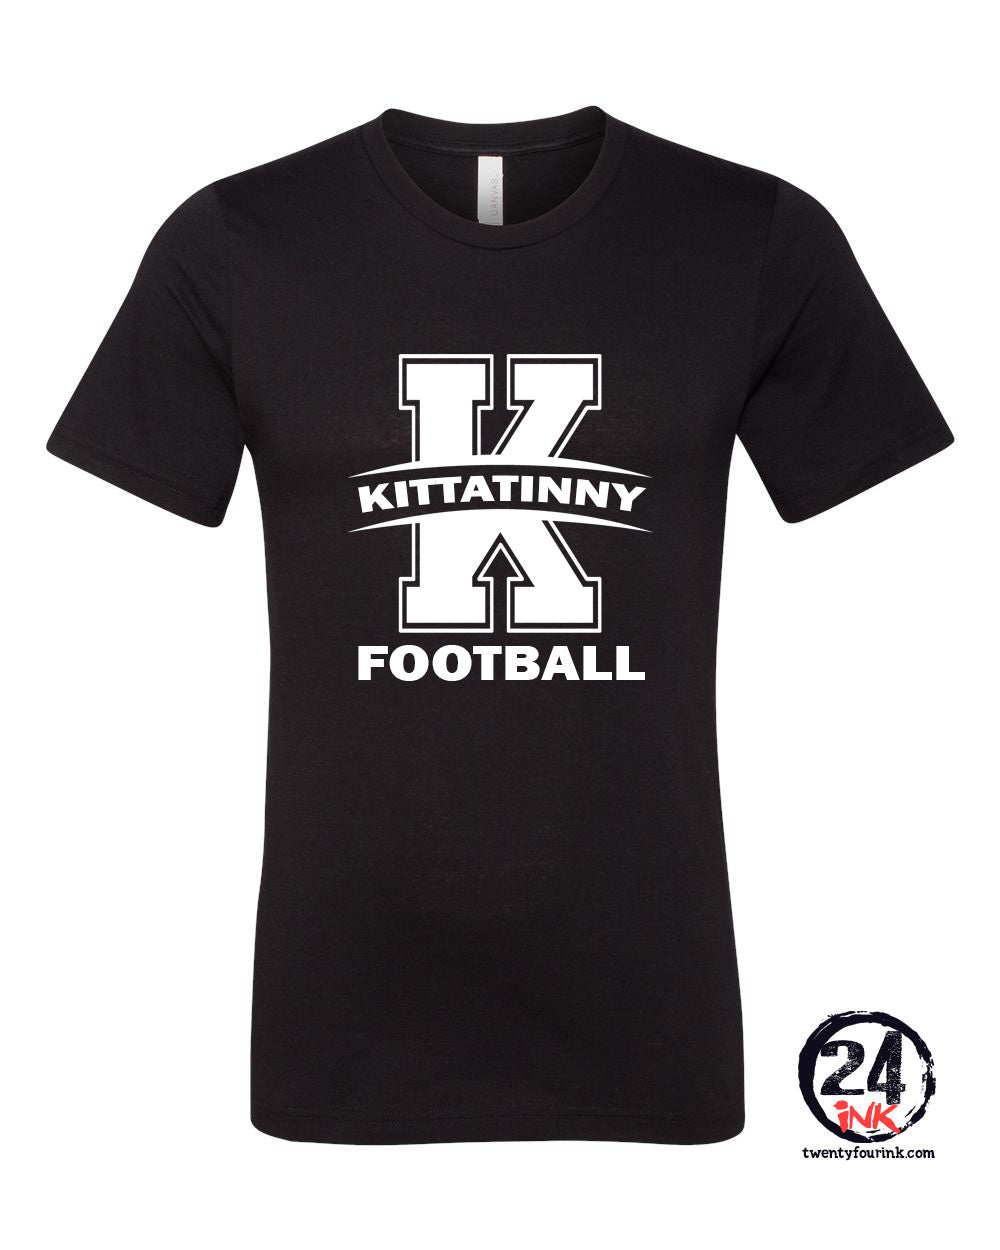 Kittatinny Football Design 12